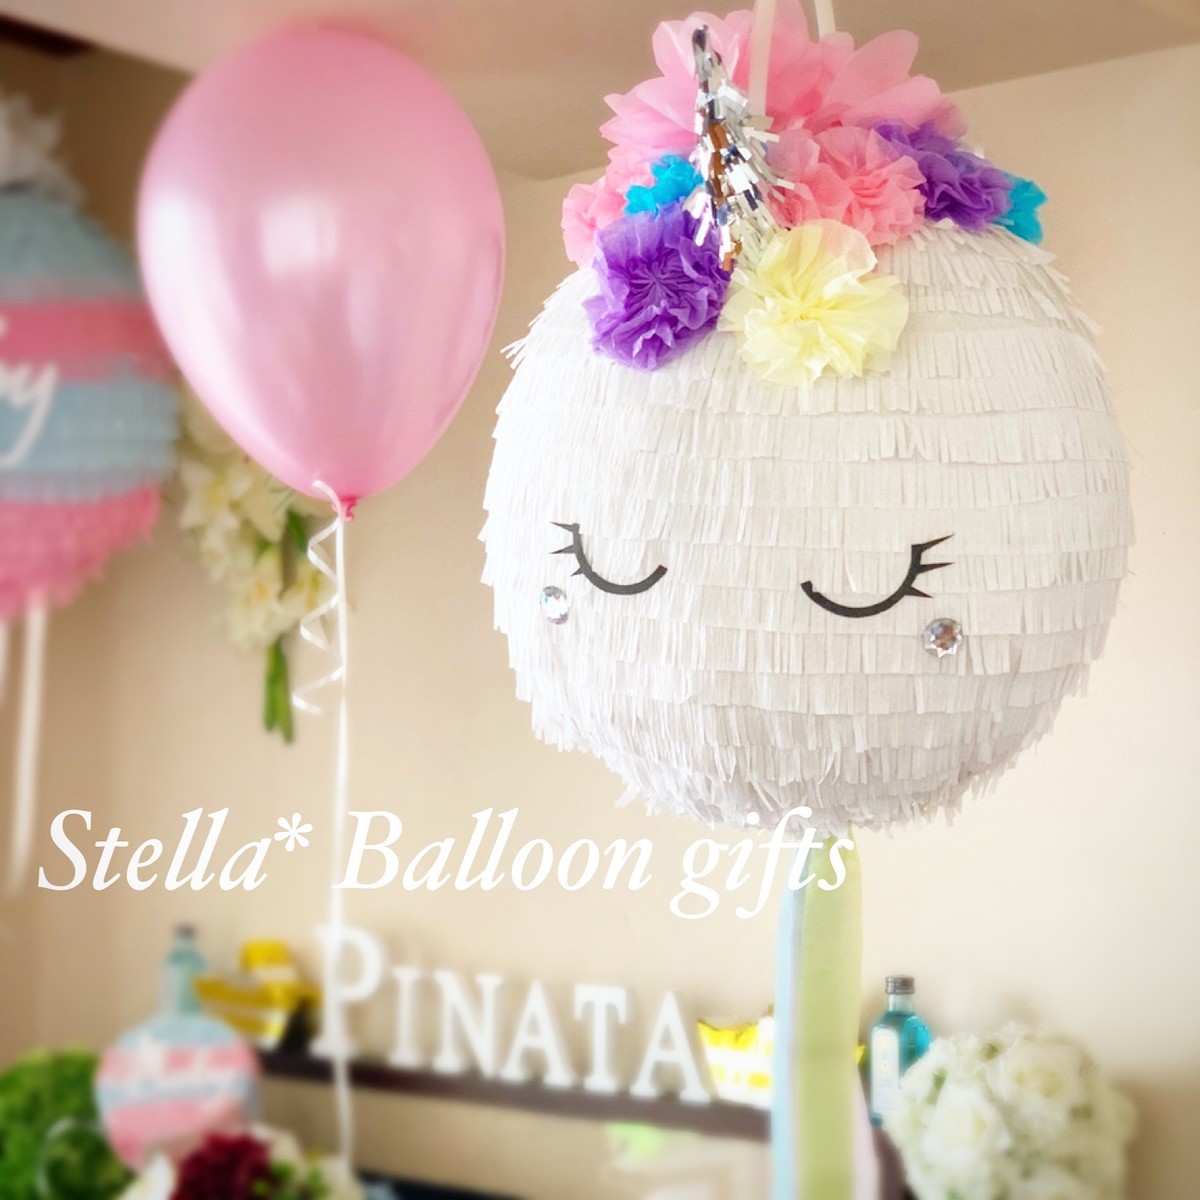 Stella Style Romantic Unicorn Pinata Stella Balloon Gifts ステラバルーンギフト Pinata Shop